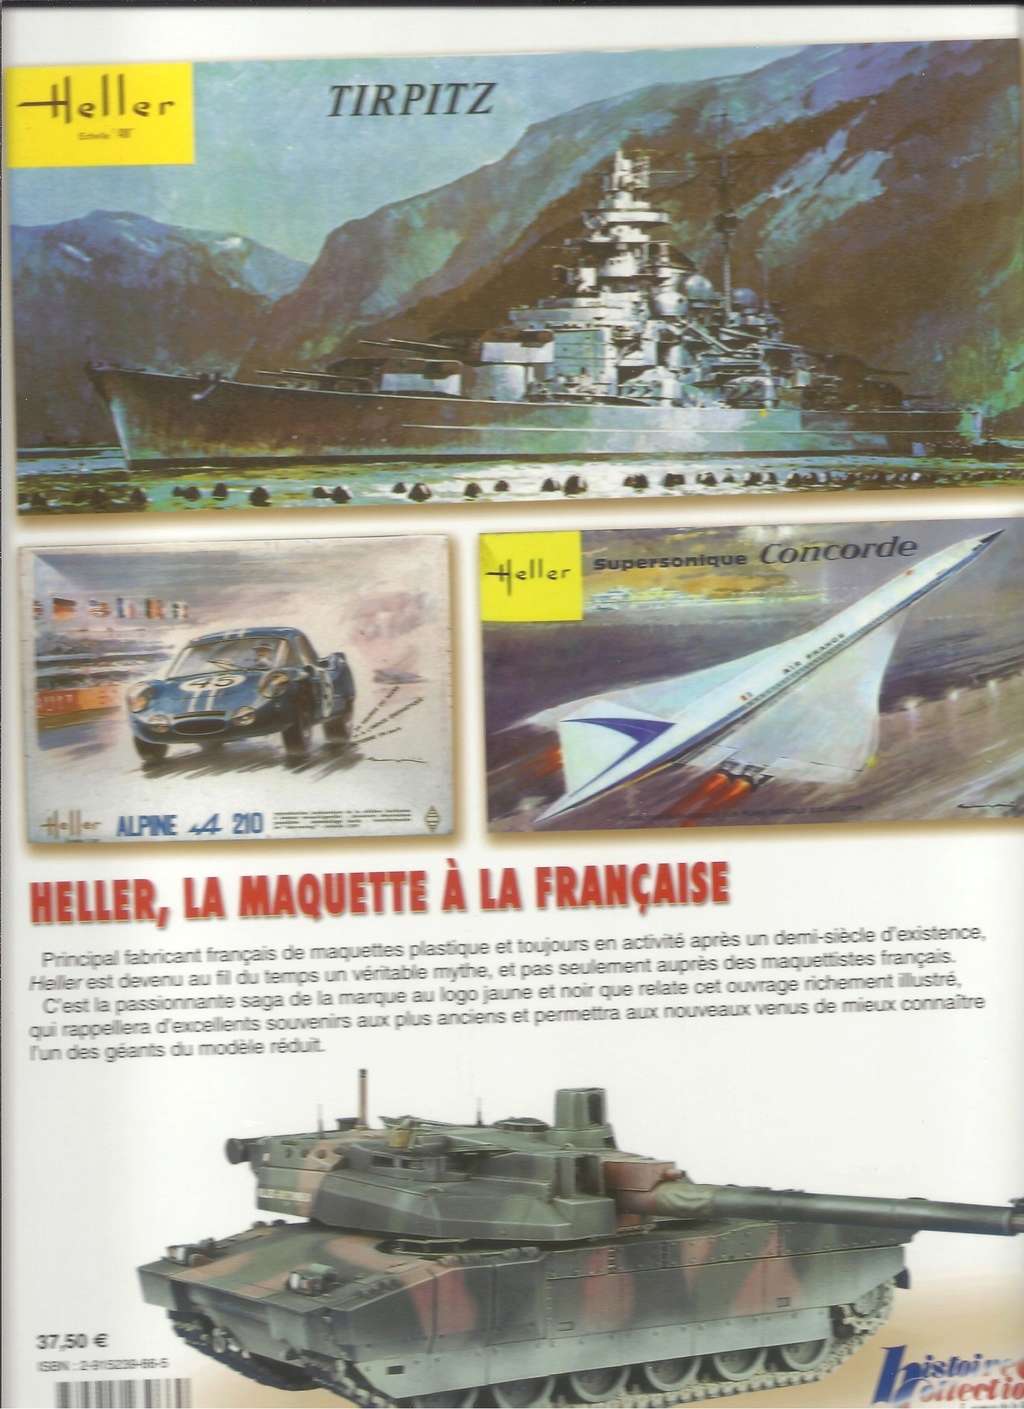 Livre HELLER LA MAQUETTE A LA FRANCAISE par Jean Christophe CARBONEL - Page 3 Livre_72